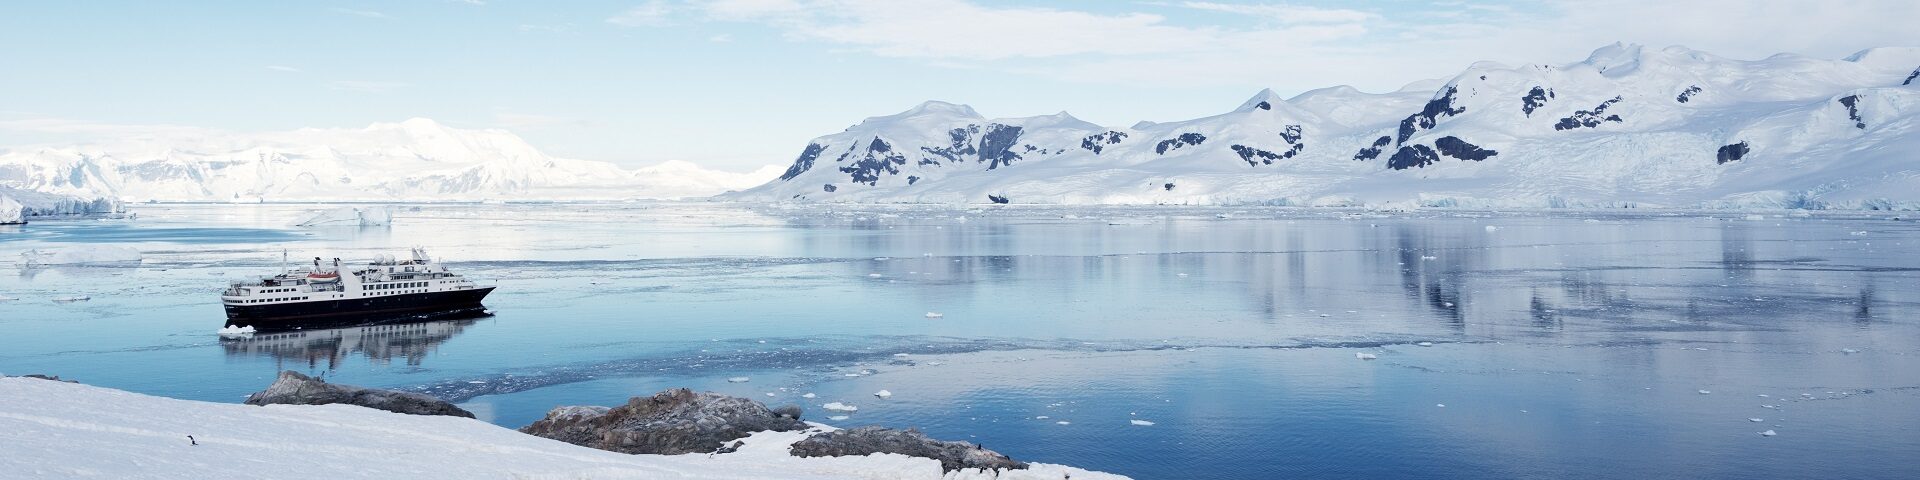 Tailor-Made Antarctica Holidays